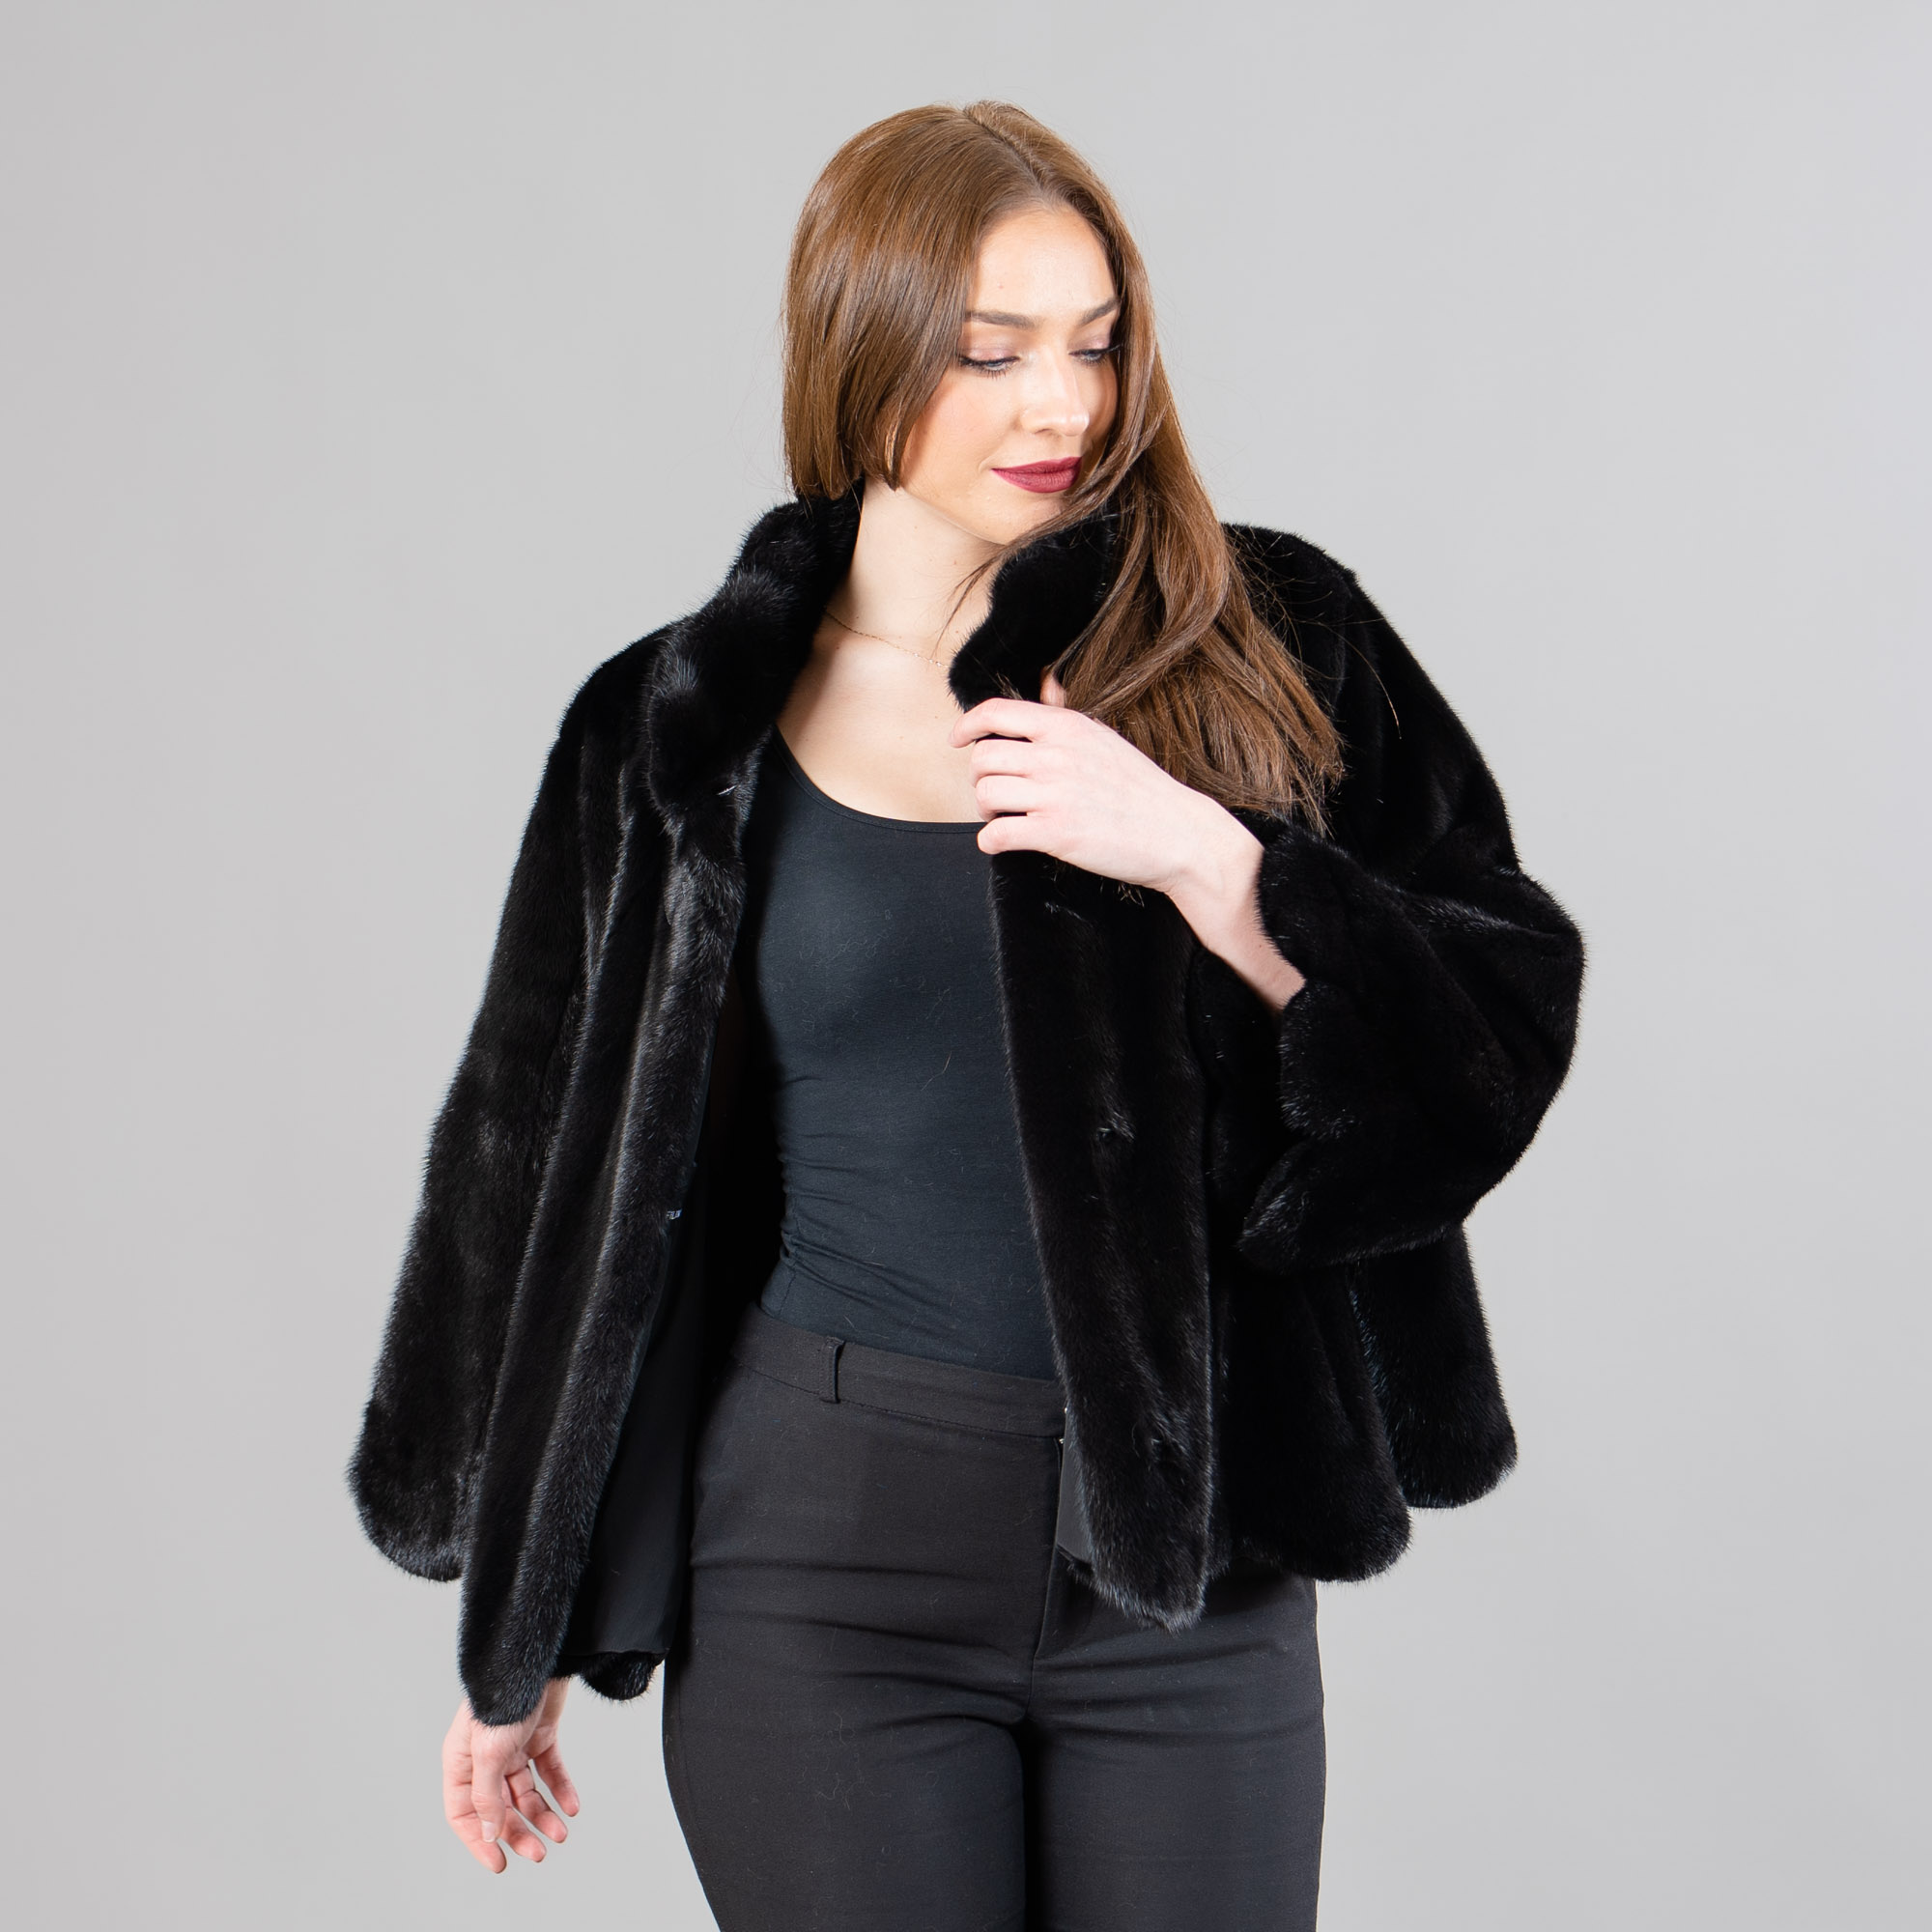 Mink fur jacket in black color